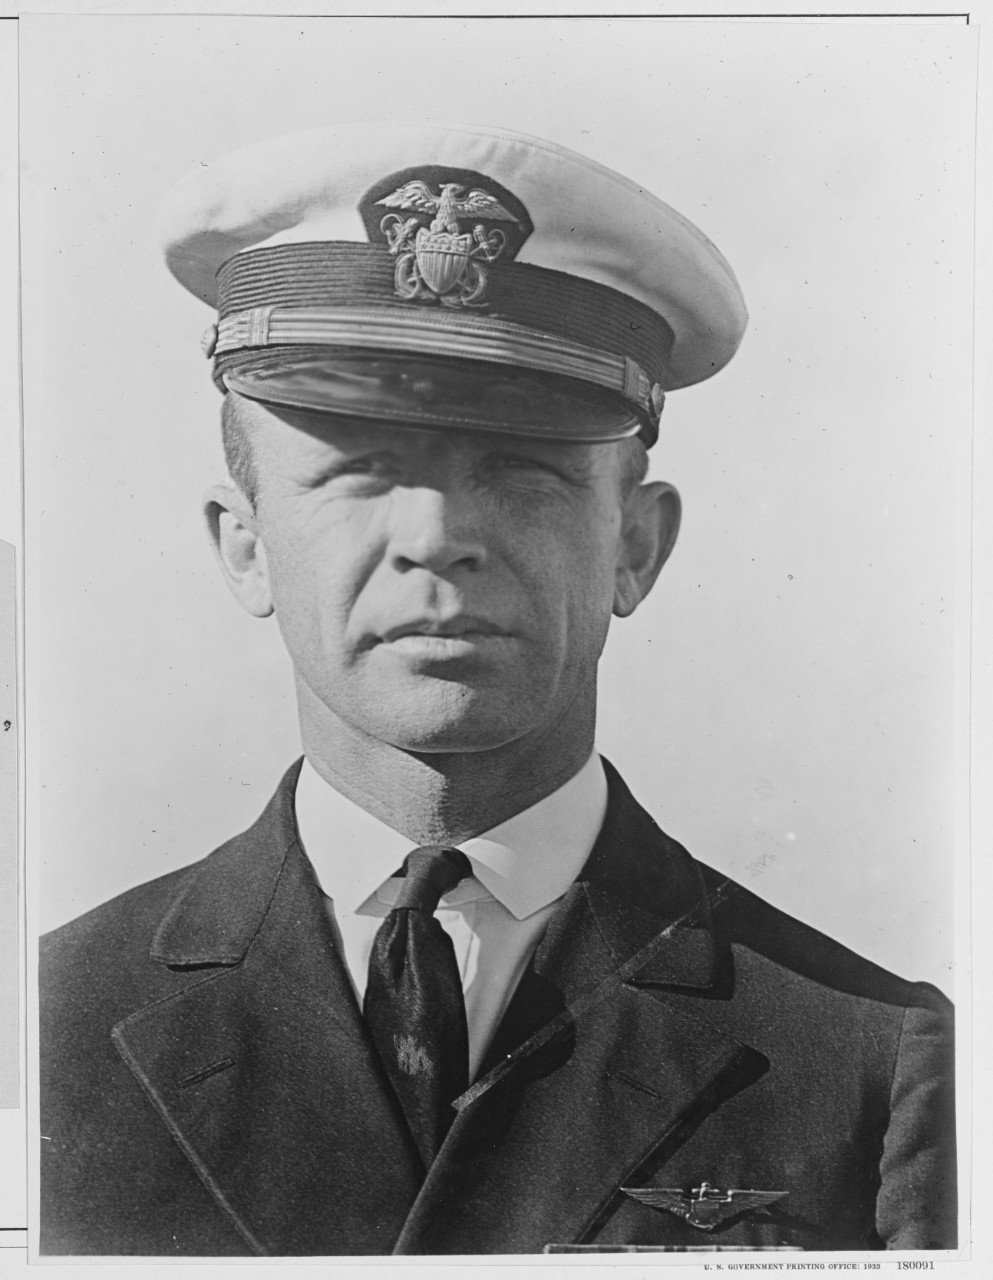 Lt Commander Homer C. Wick, U.S. Navy